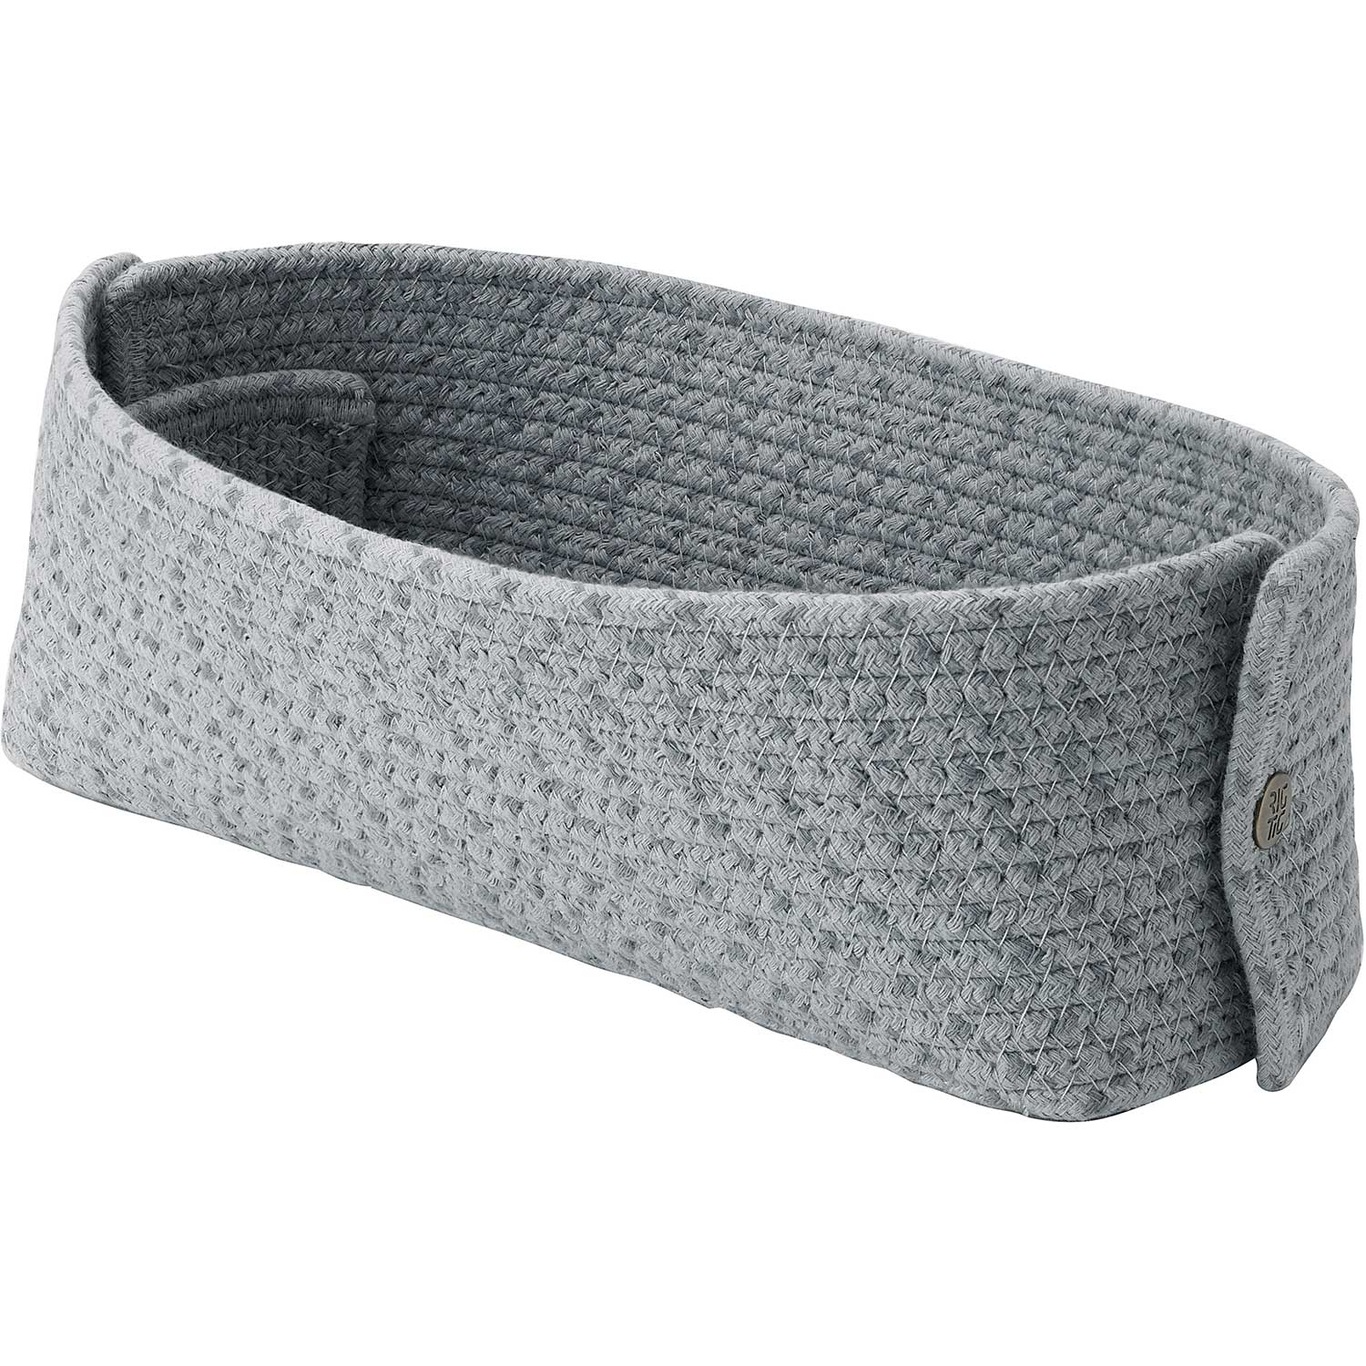 Knit-It Bread Basket, Grey